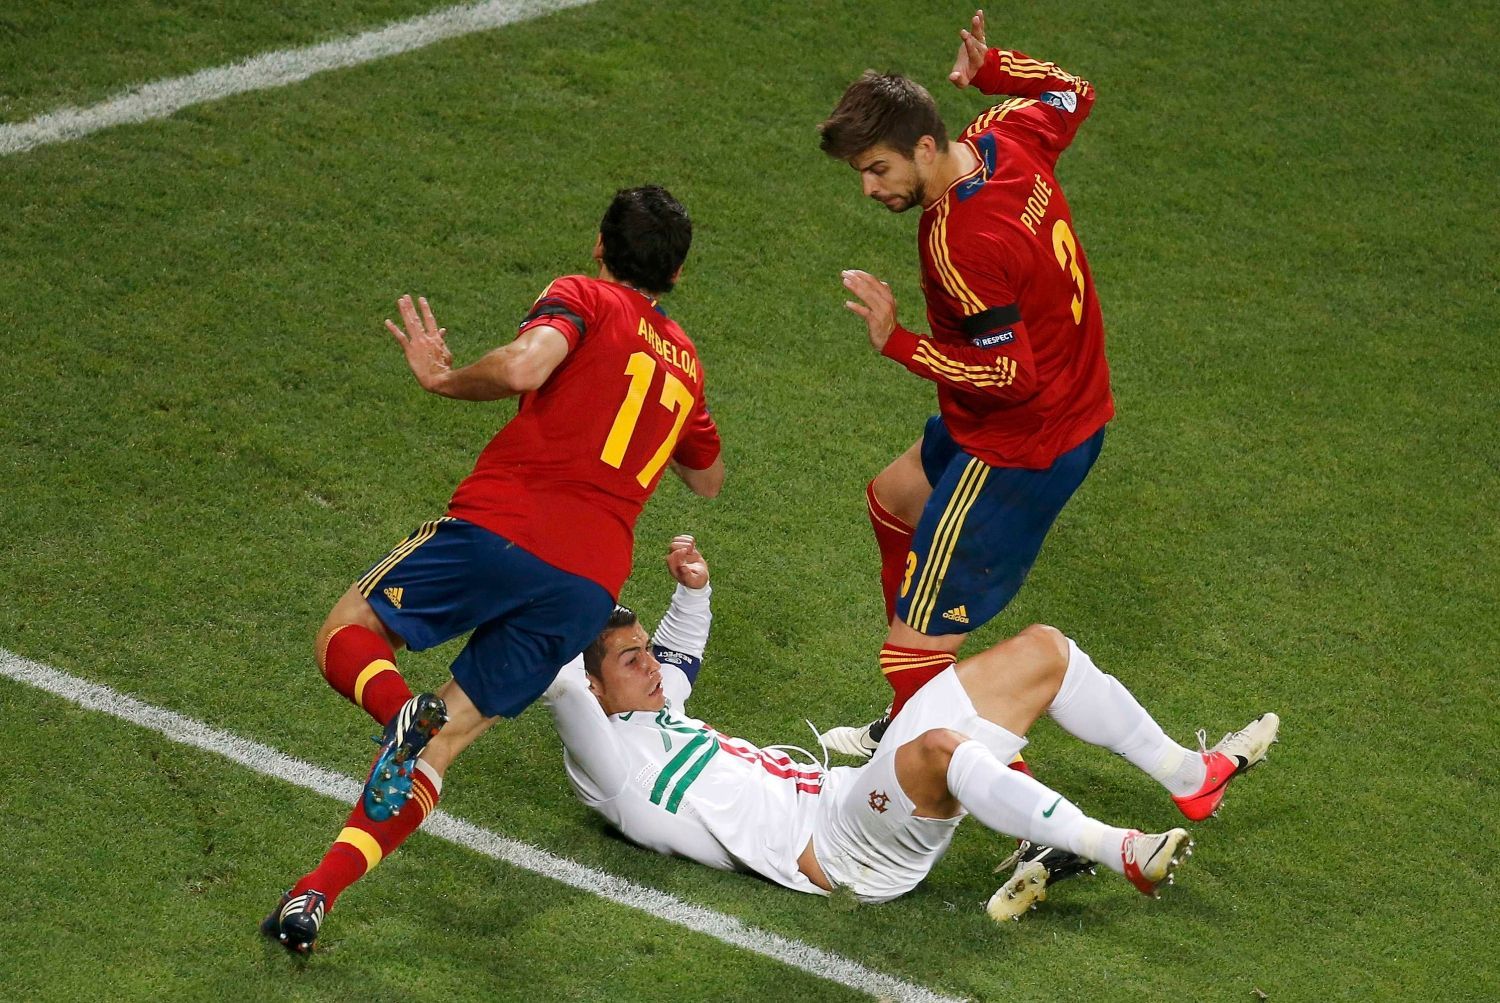 Španělští fotbalisté Alvaro Arbeloa a Gerard Piqué se vyhýbají ležícímu Portugalci Cristianu Ronaldovi během semifinále na Euru 2012.